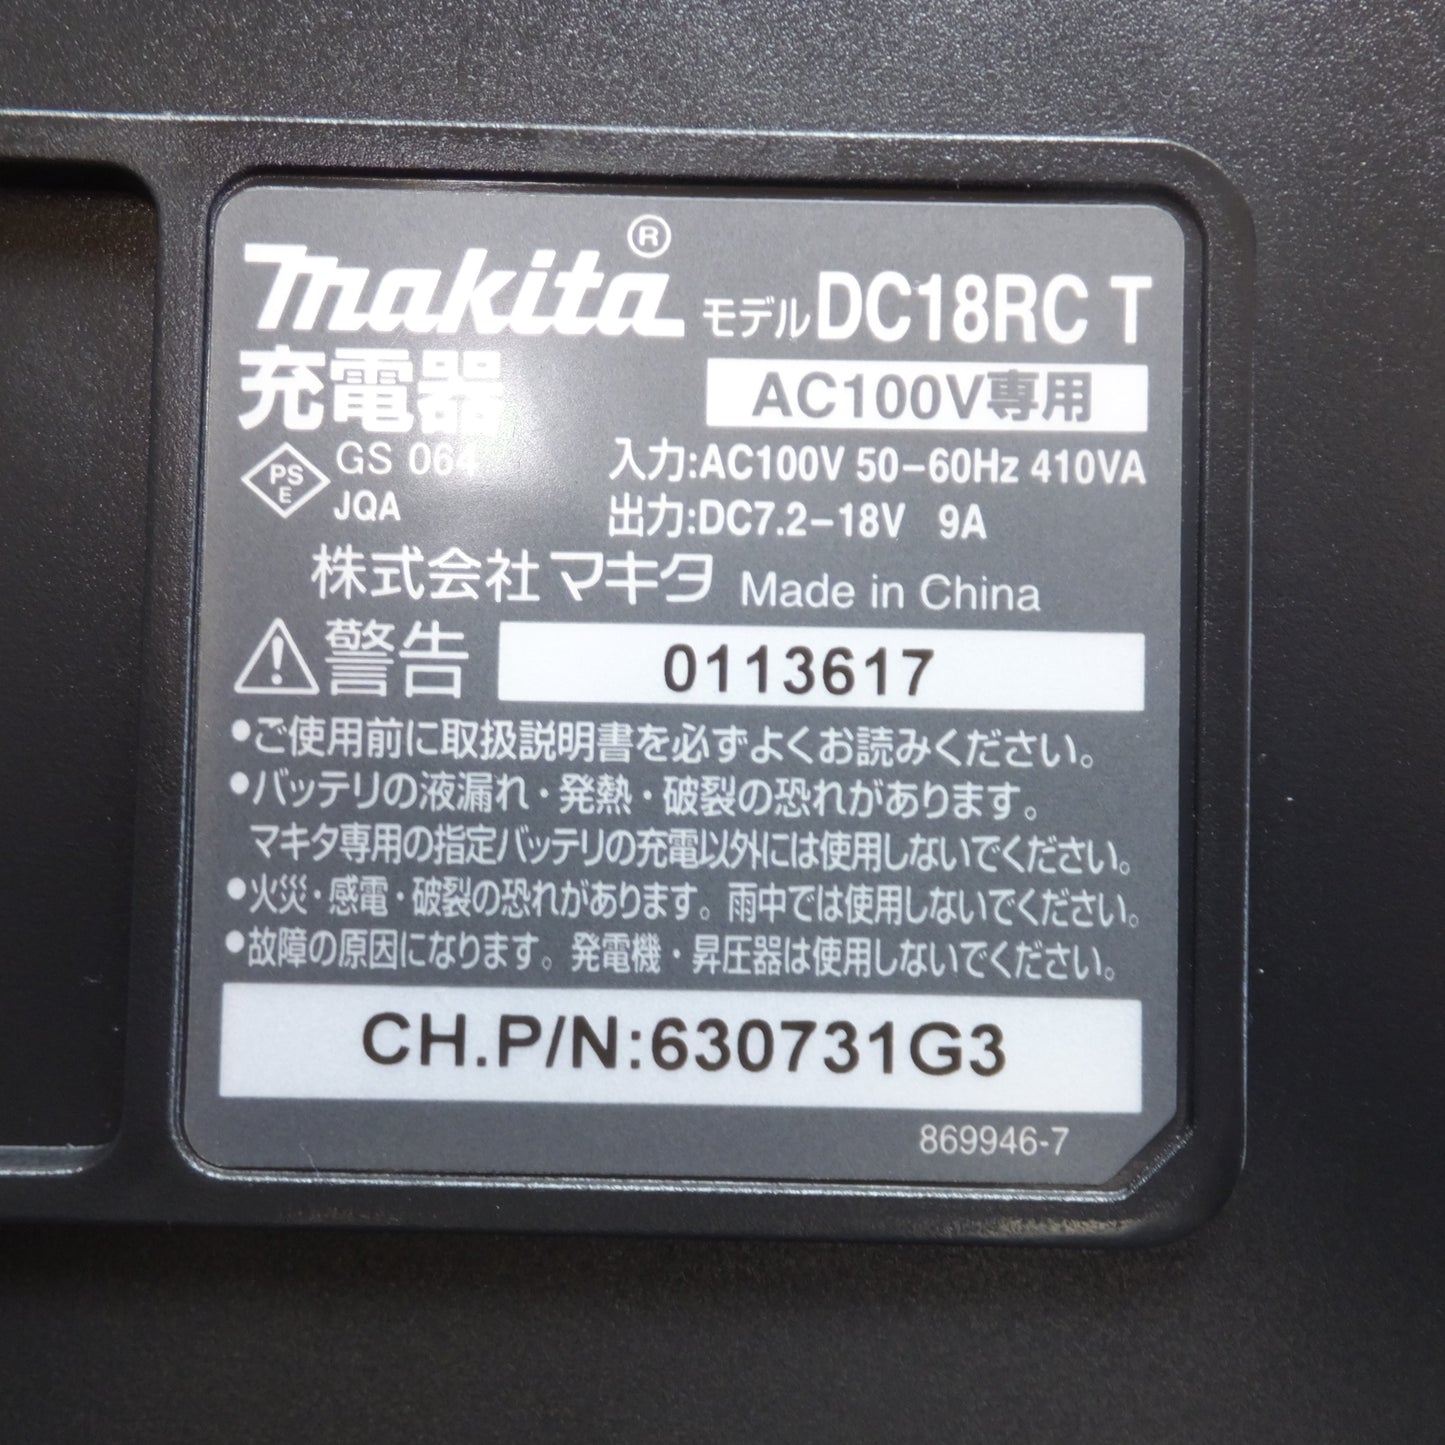 [送料無料]★マキタ makita 18mm 充電式ハンマドリル HR182DRGXB 18V★